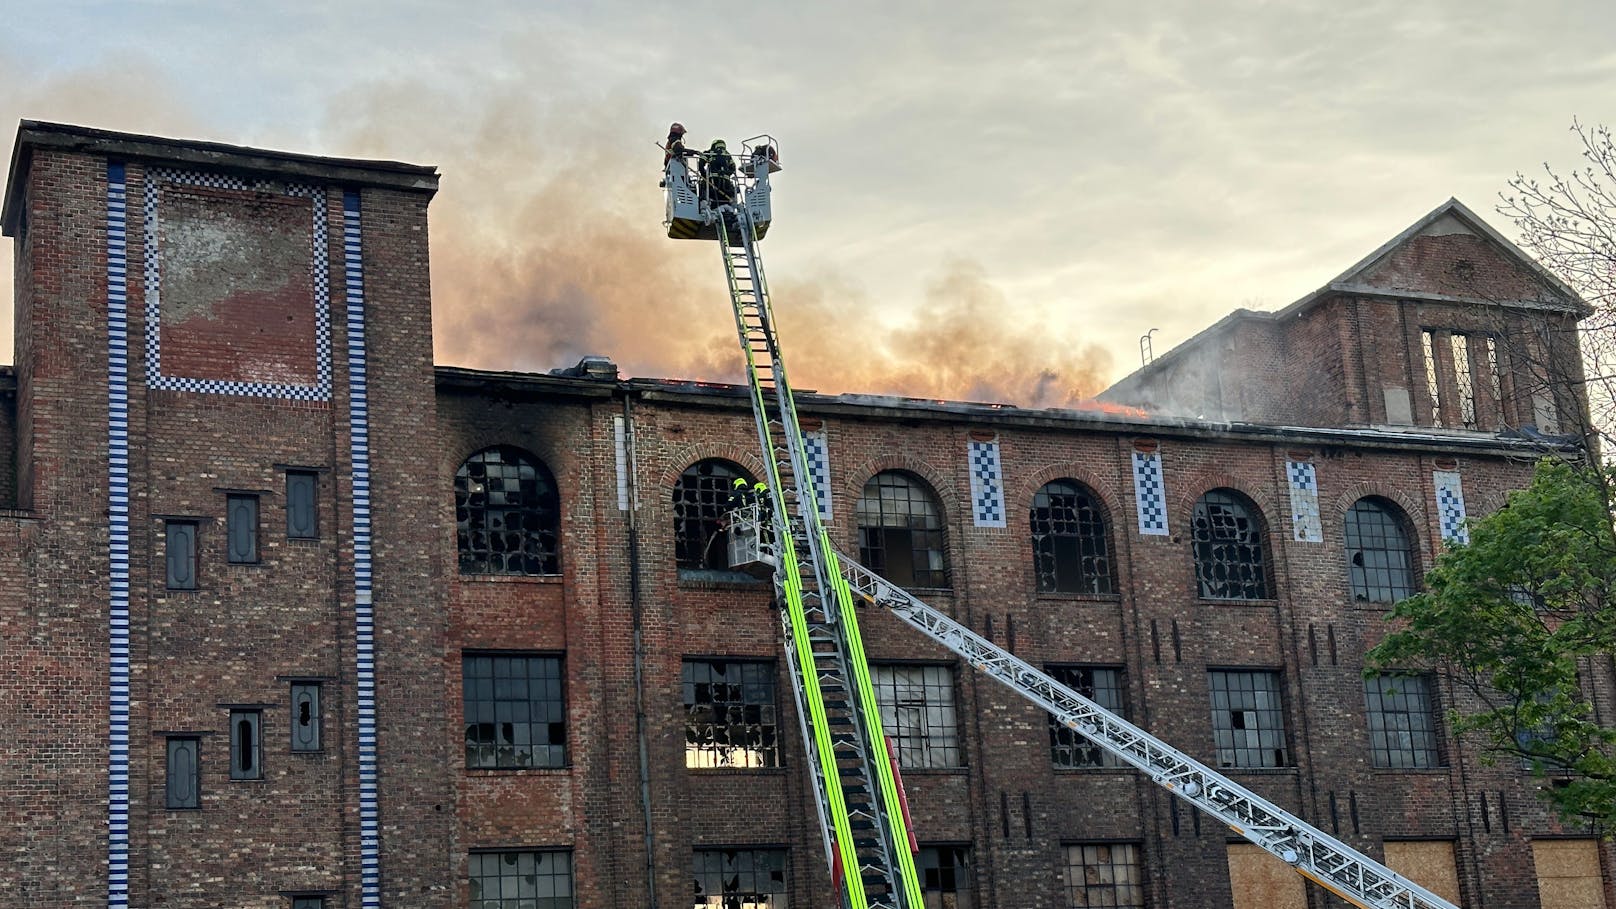 Historische Brotfabrik in Flammen – Brand wurde gelegt